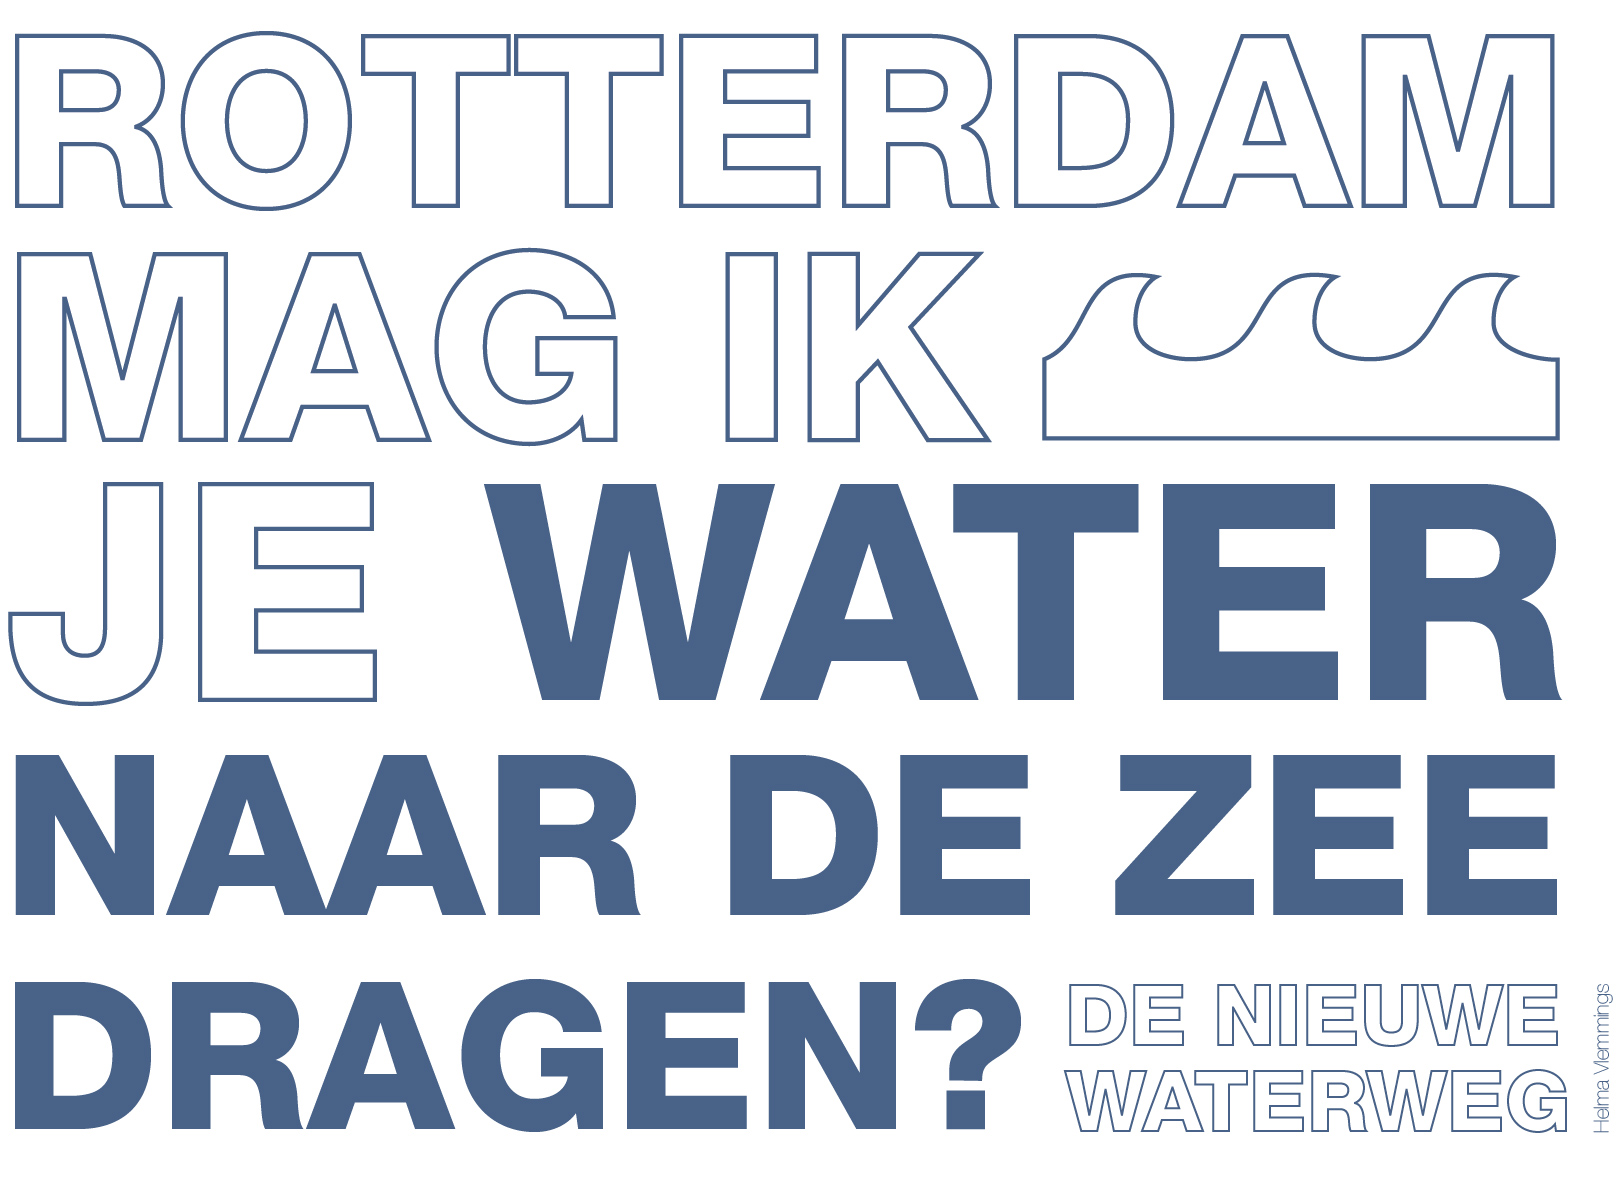 Rotterdam, mag ik je water naar de zee dragen?